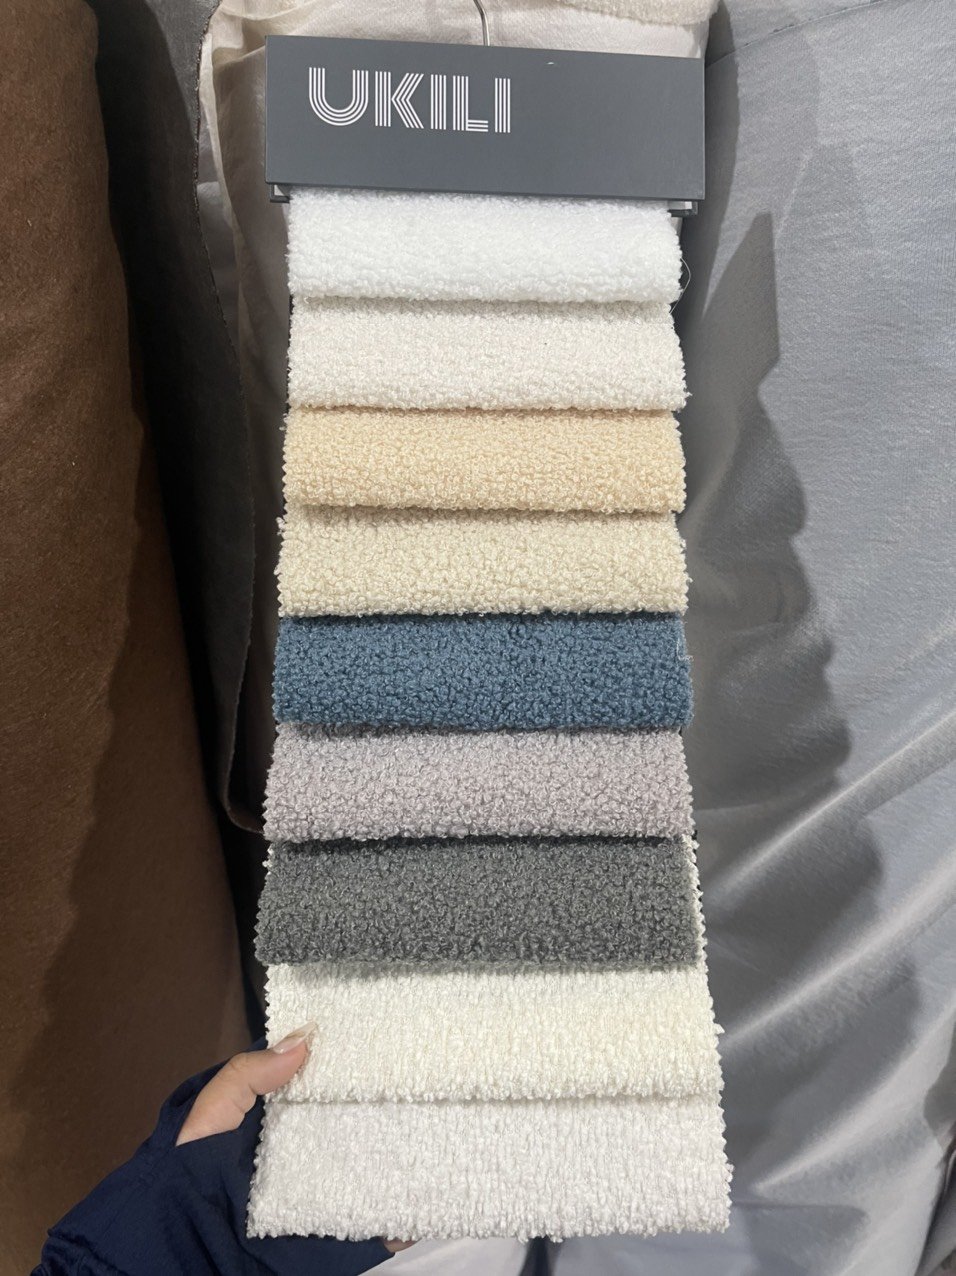 Sofa băng vải phong cách Hàn Quốc